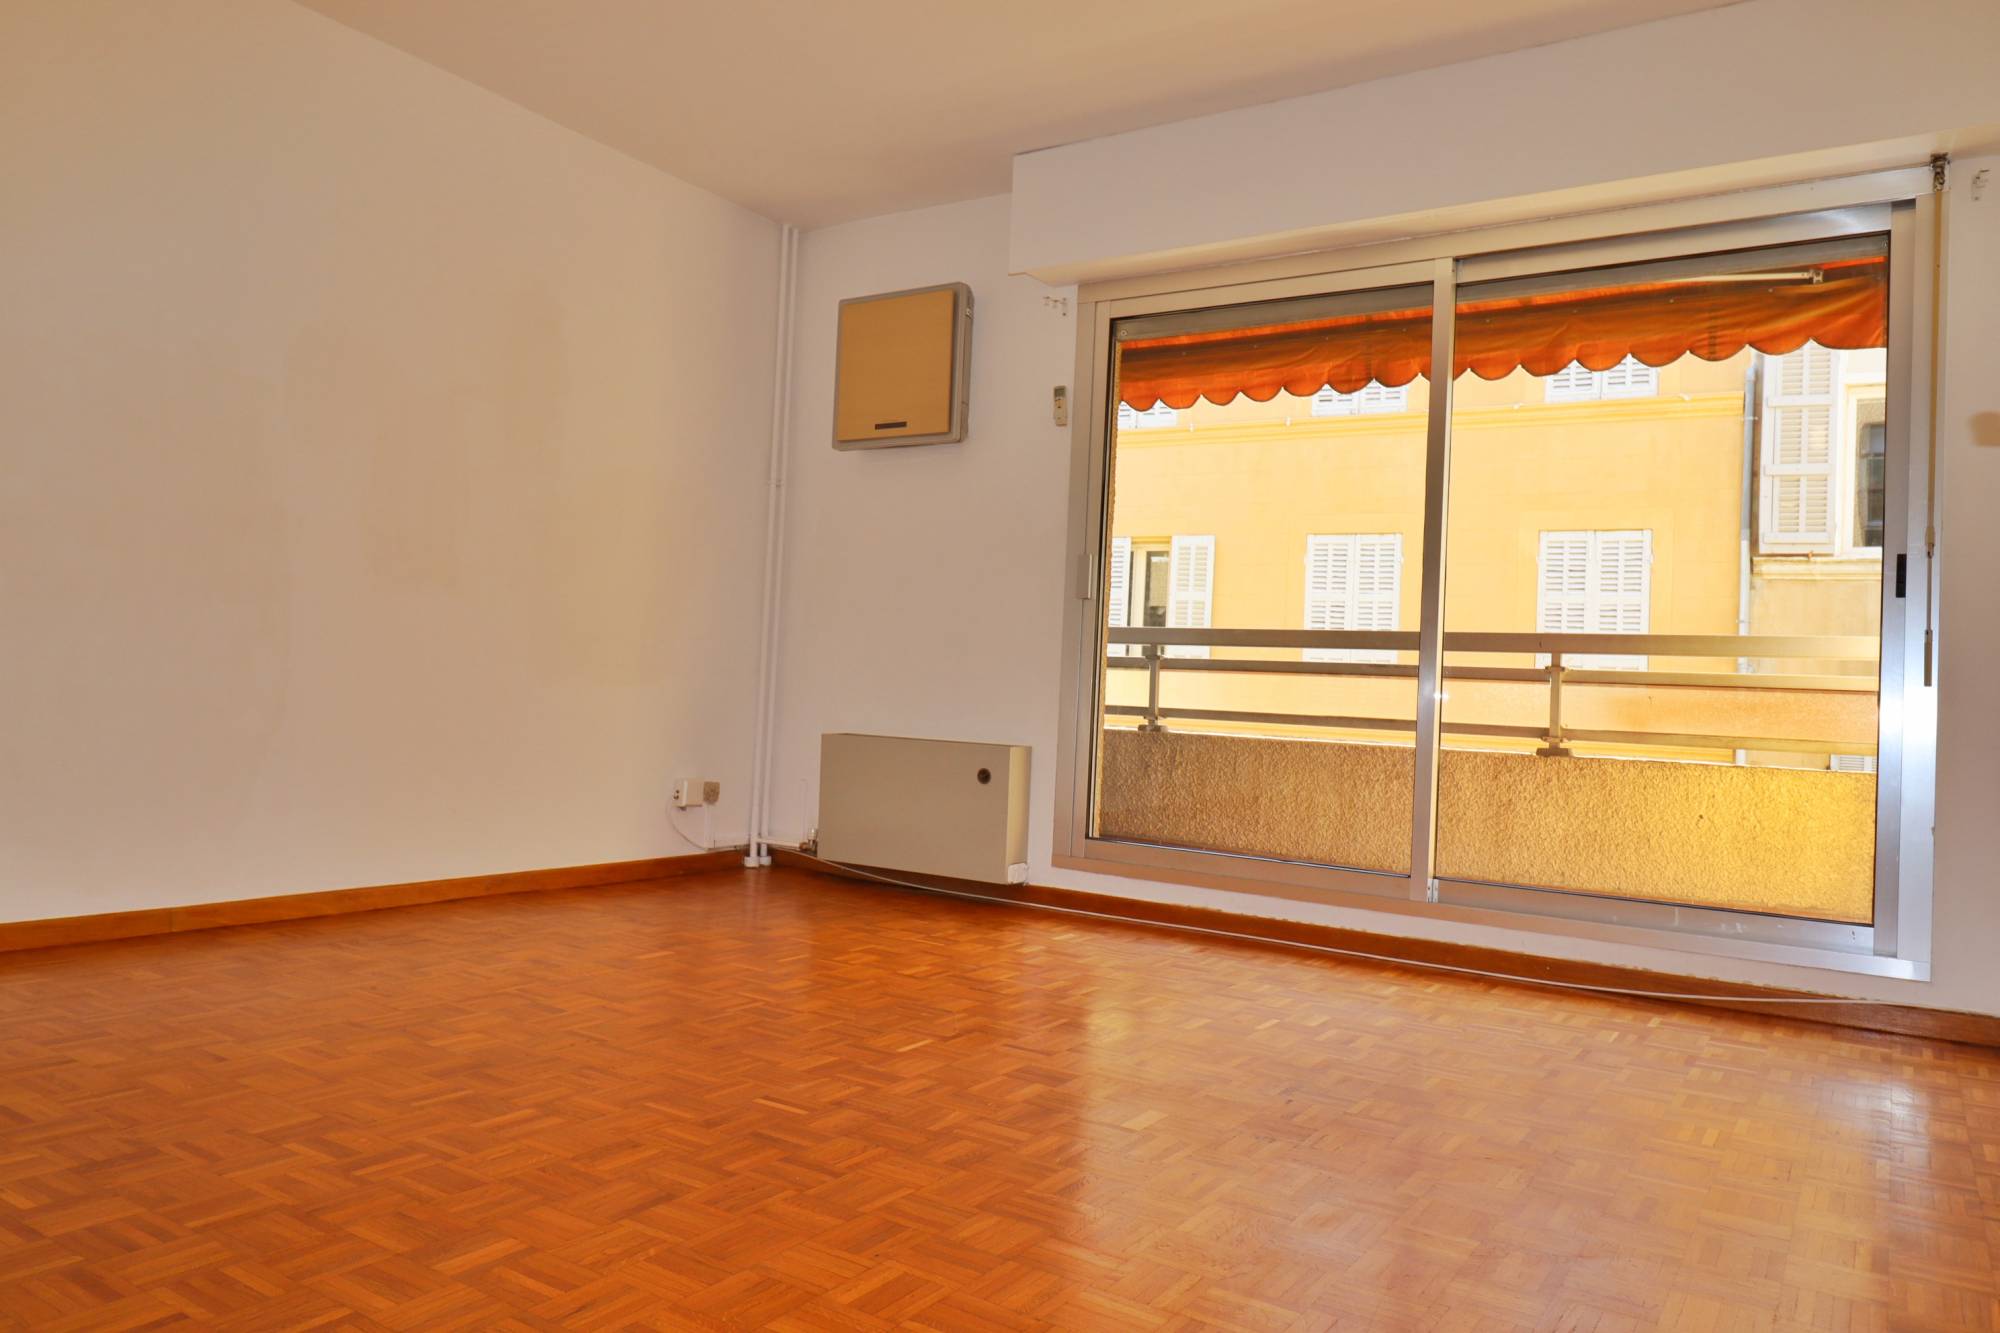 séjour A vendre appartement 2 pièces de 43 m² avec balcon et cave situé entre Castellane et Préfecture 13006 Marseille 